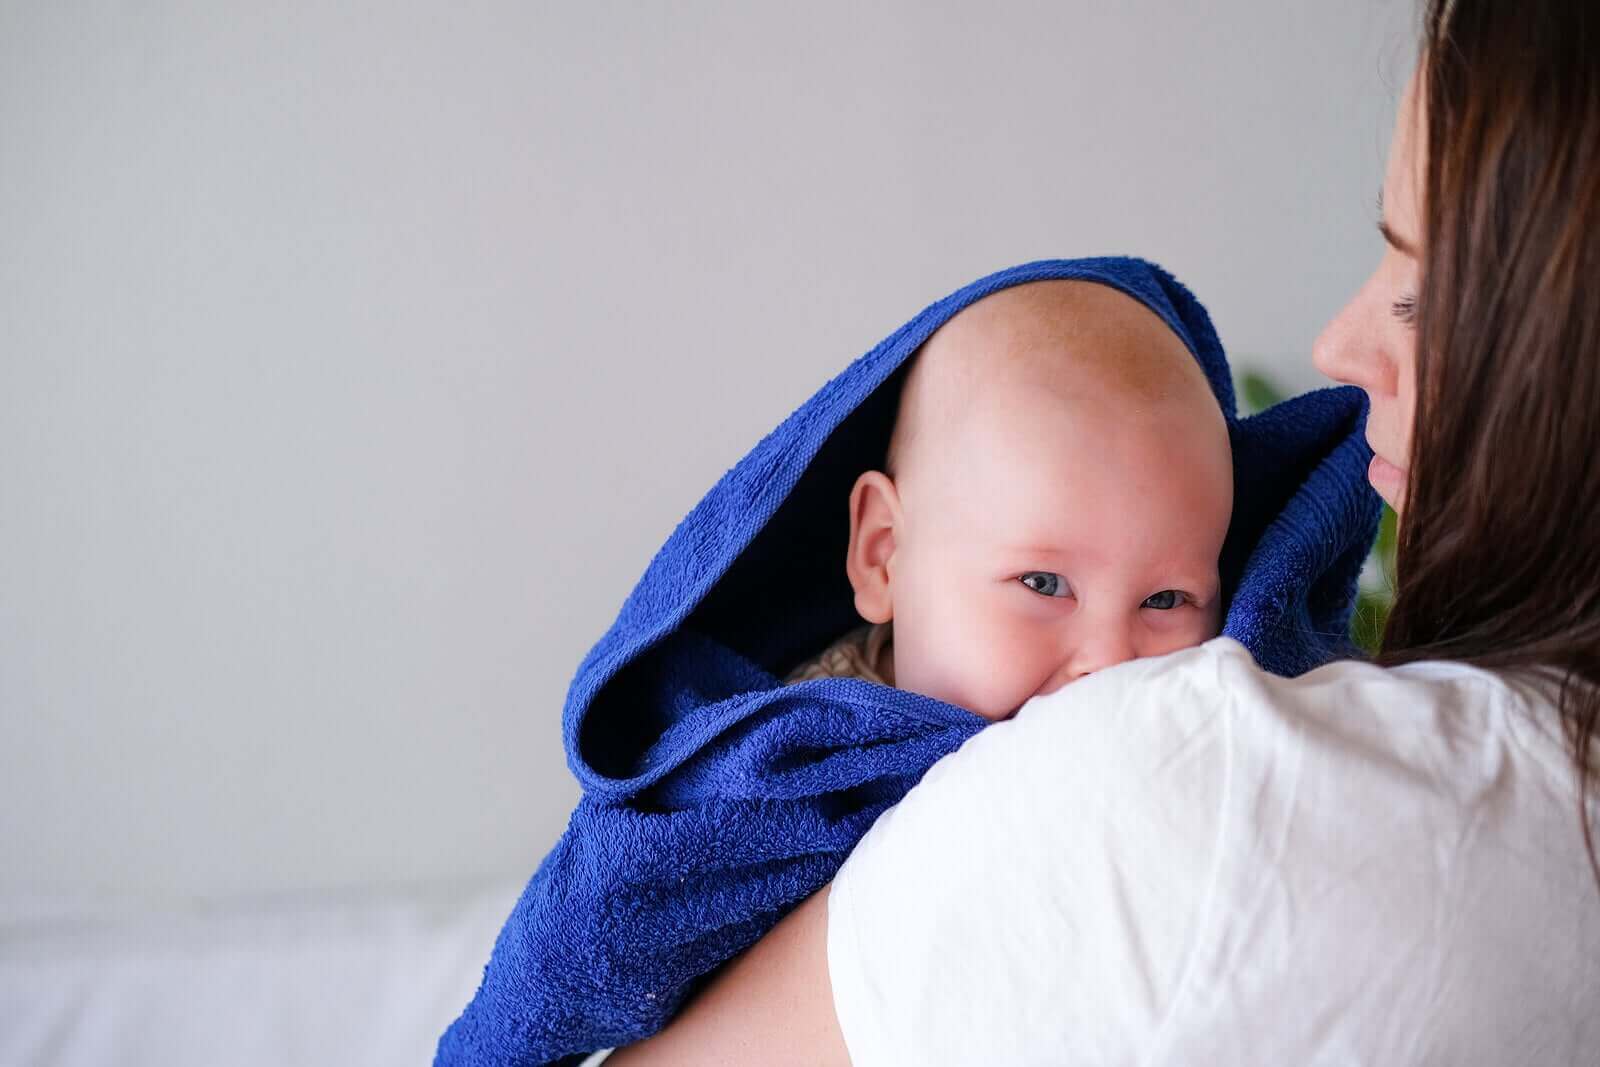 Kylpytarvikkeet helpottamaan vauvan kylpyhetkeä